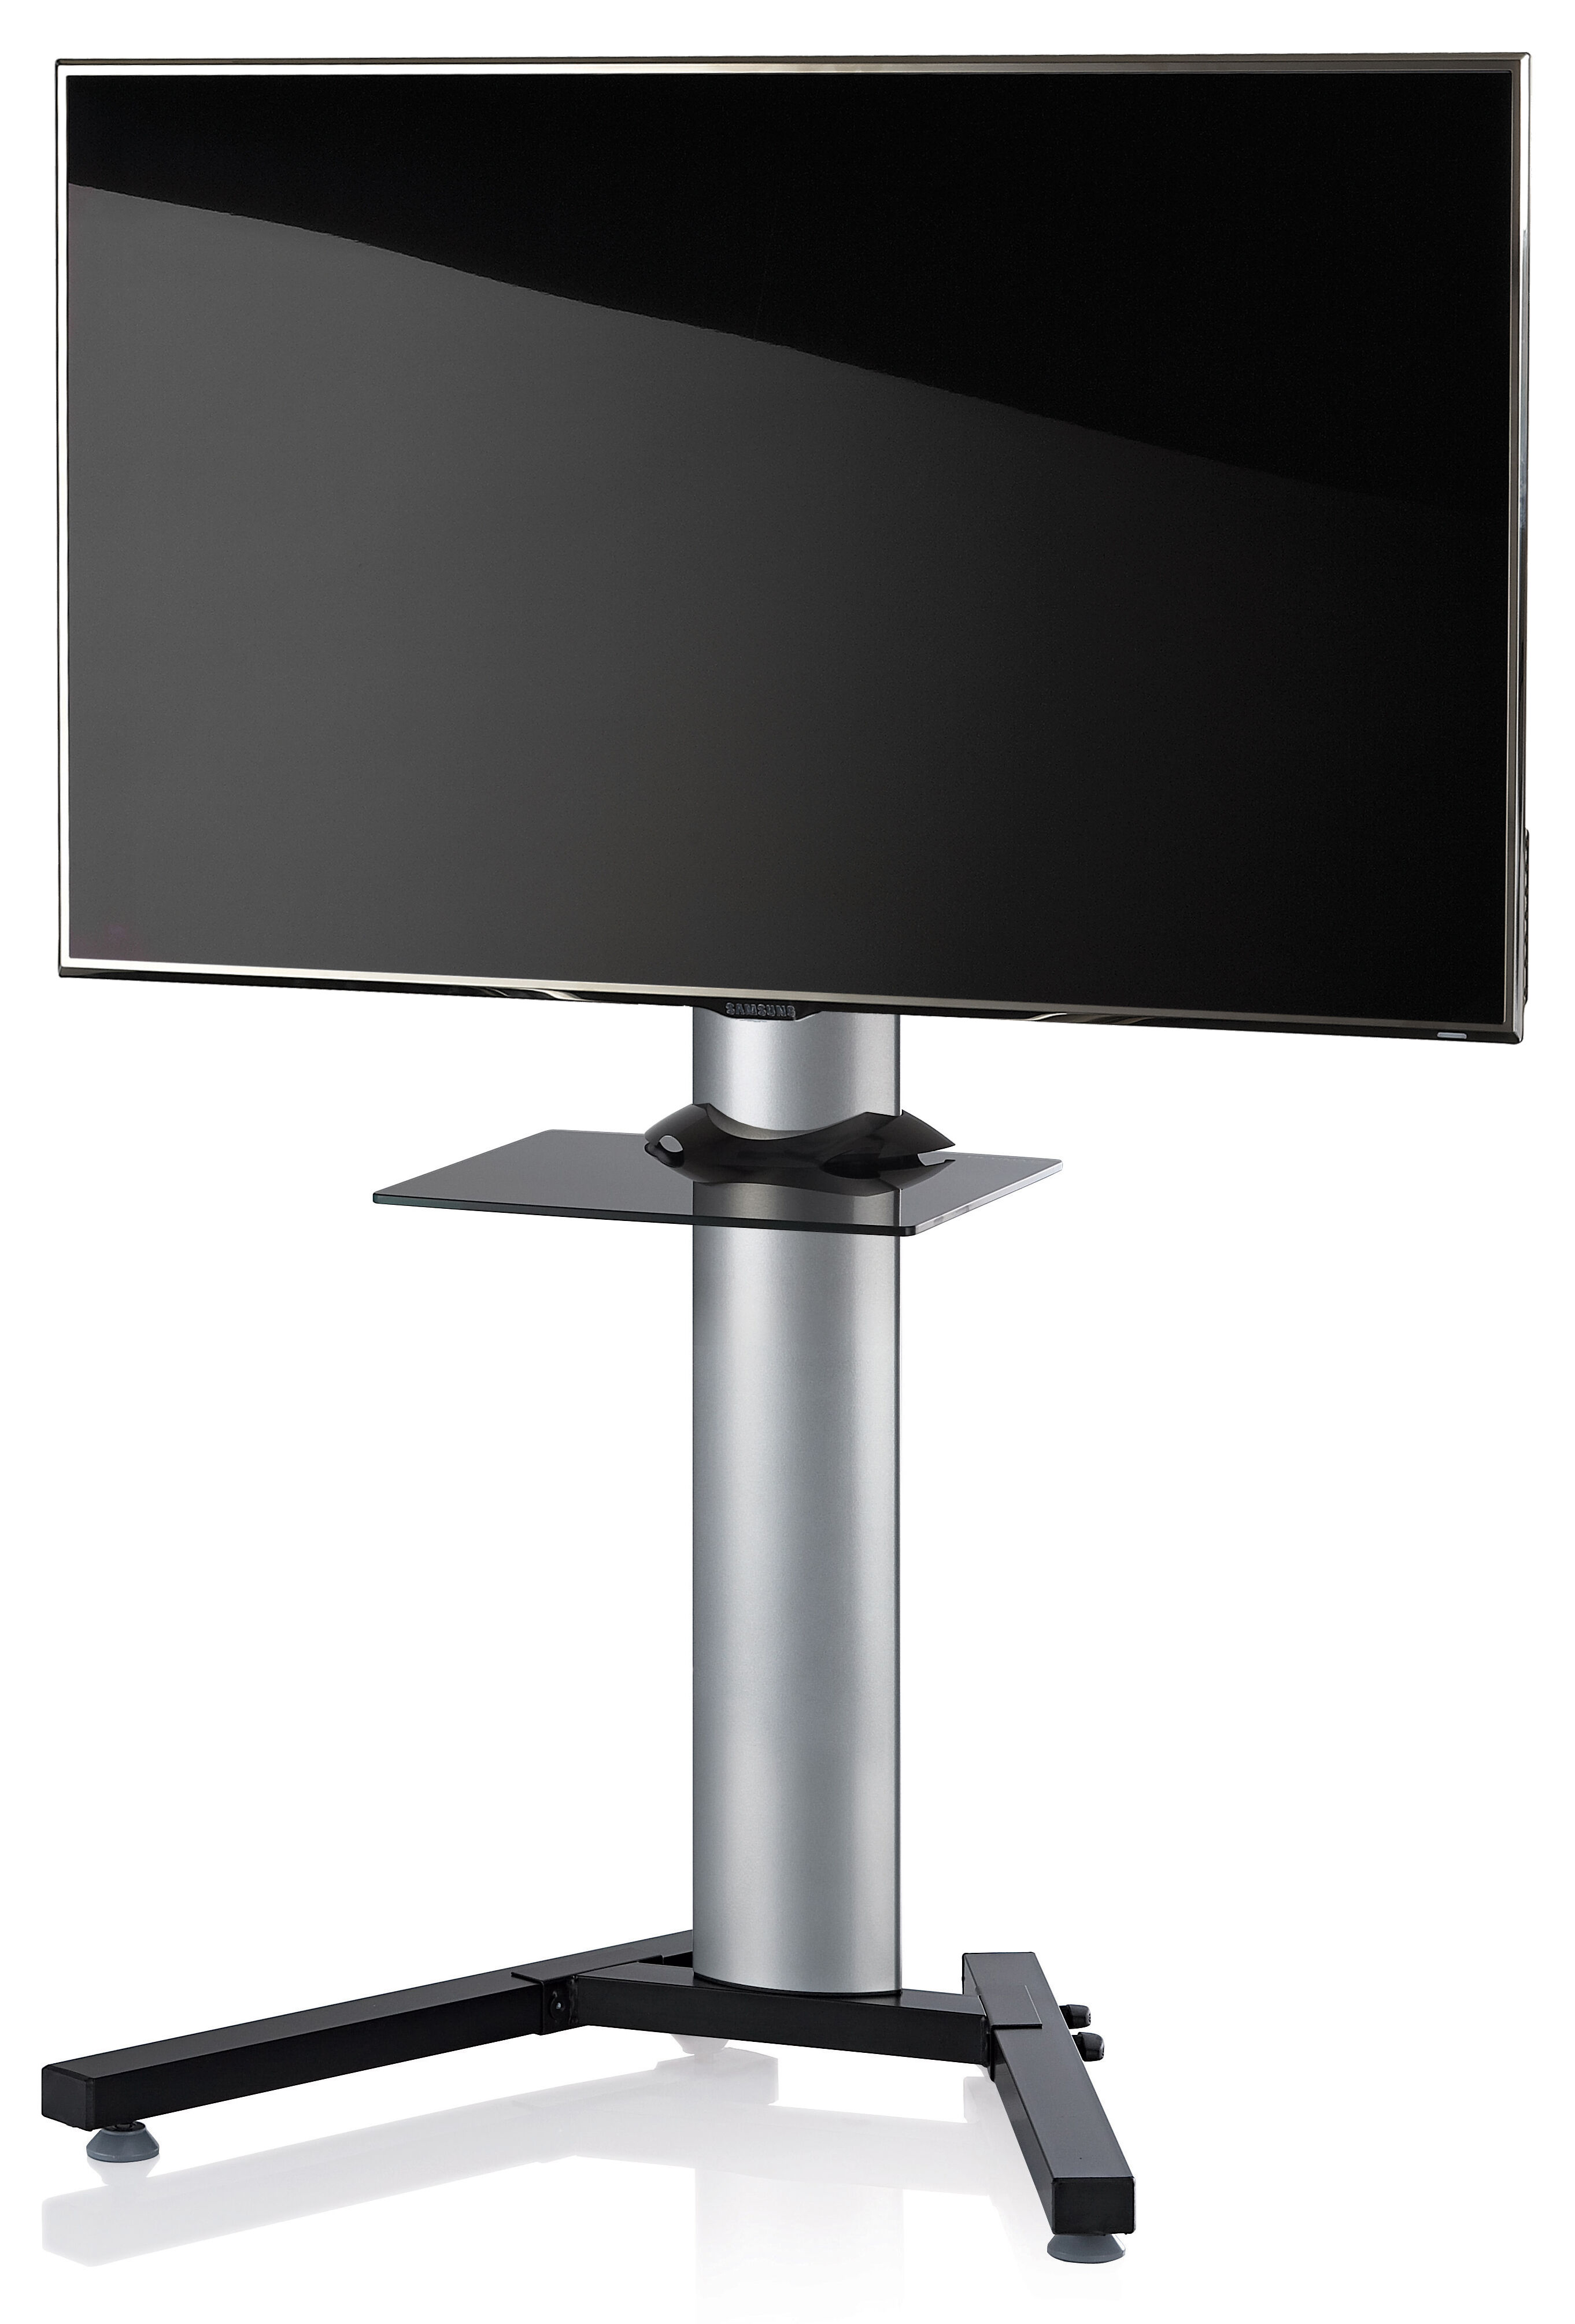 StadinoMini gulvstativ til TV med V-fot og glasshylle sølvfarget, svart glass.